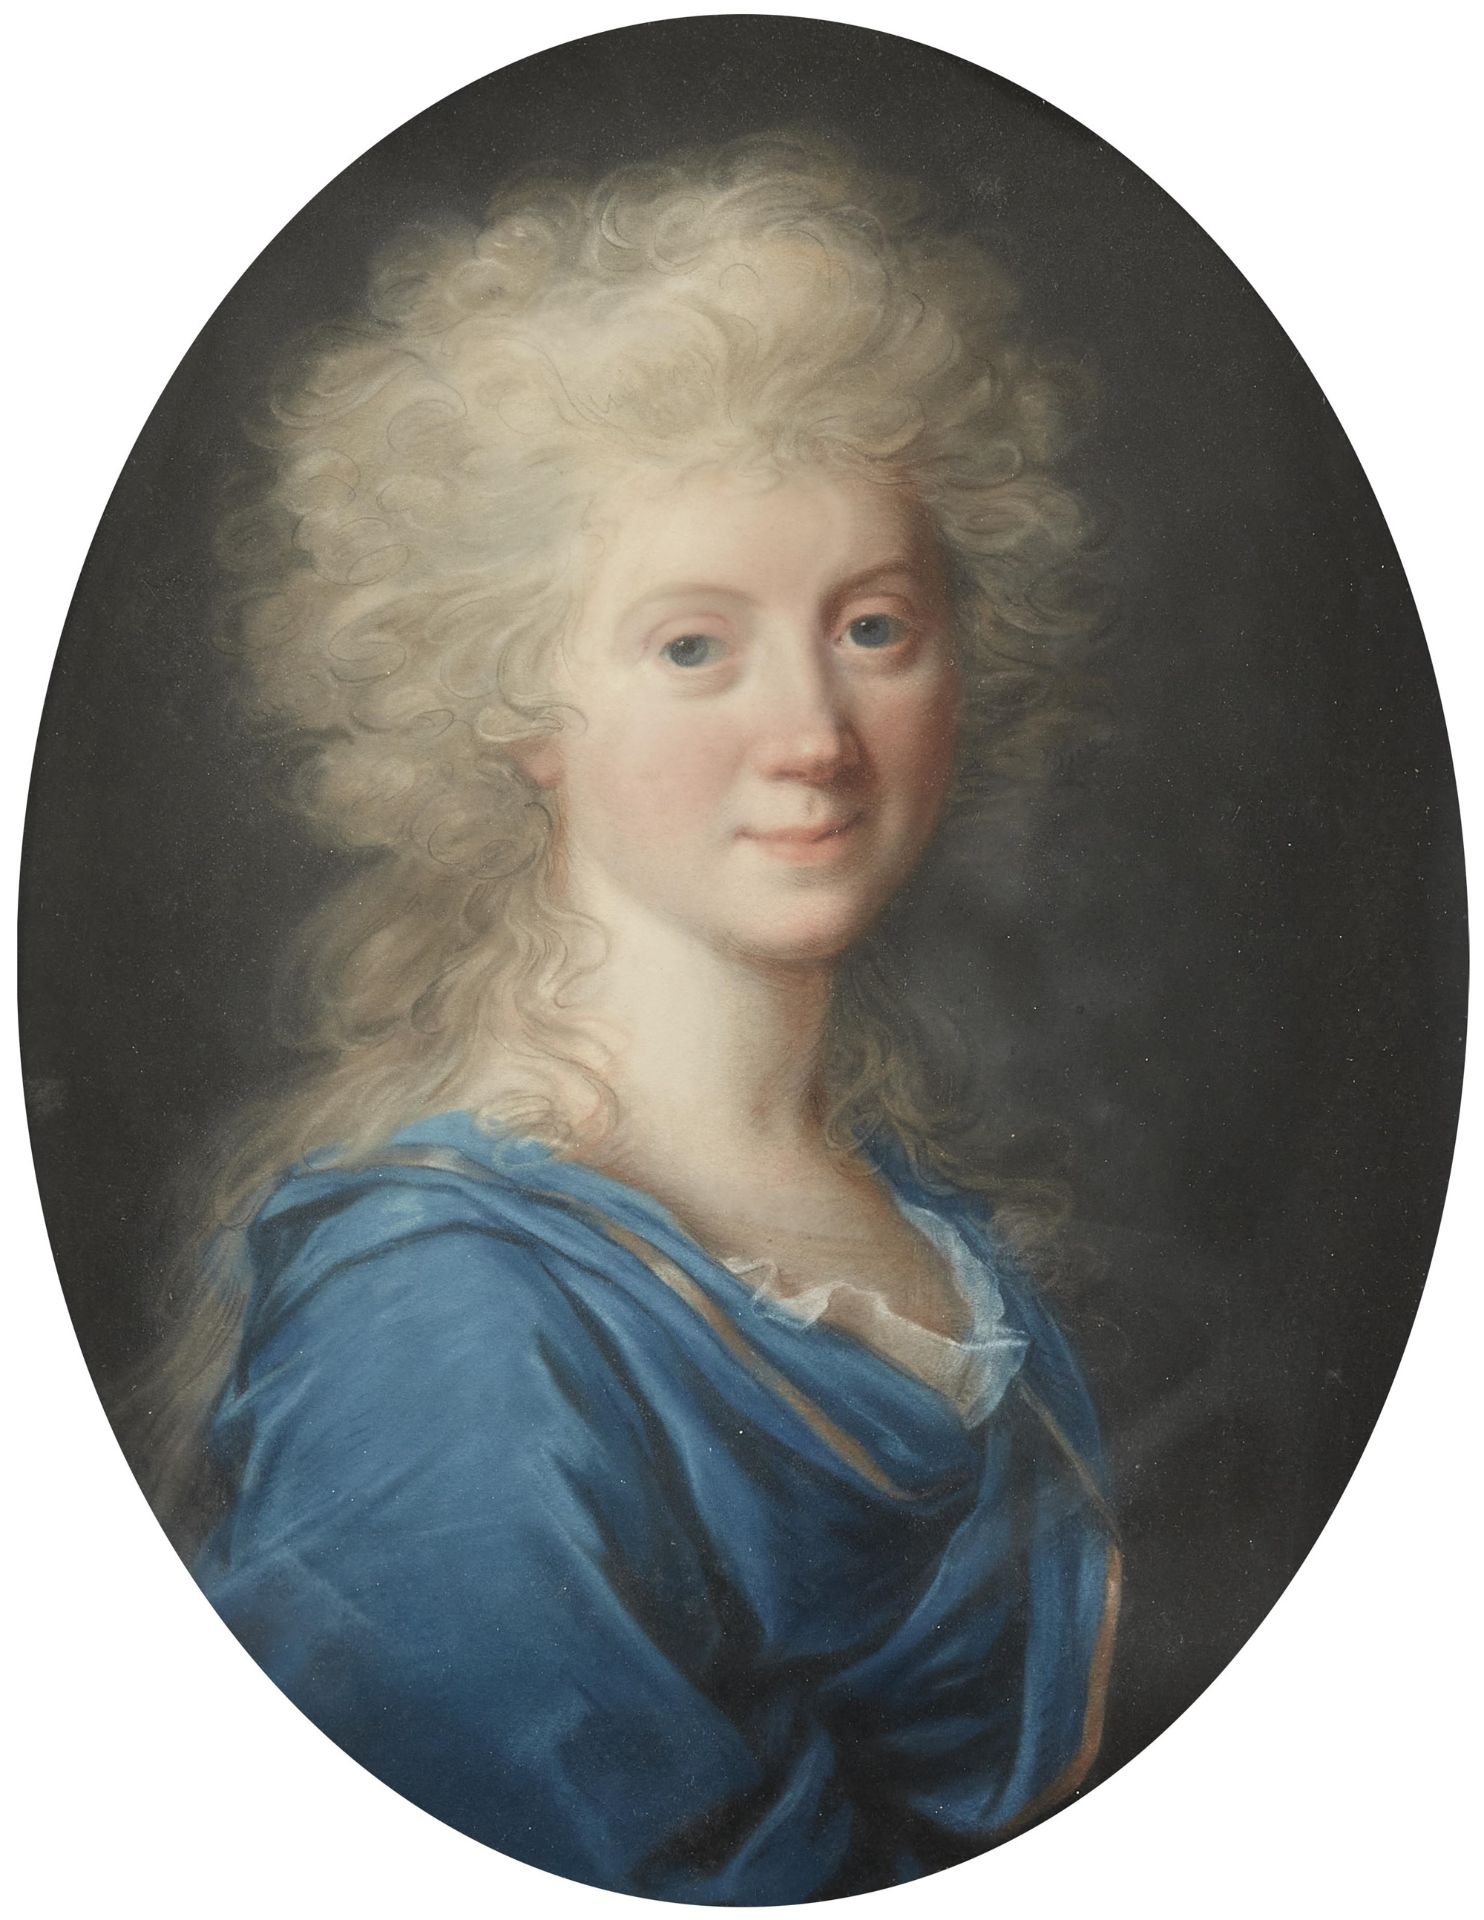 Johann Heinrich Schröder, attributed to, Portrait of Friederike Eleonore Sophie von Kalb